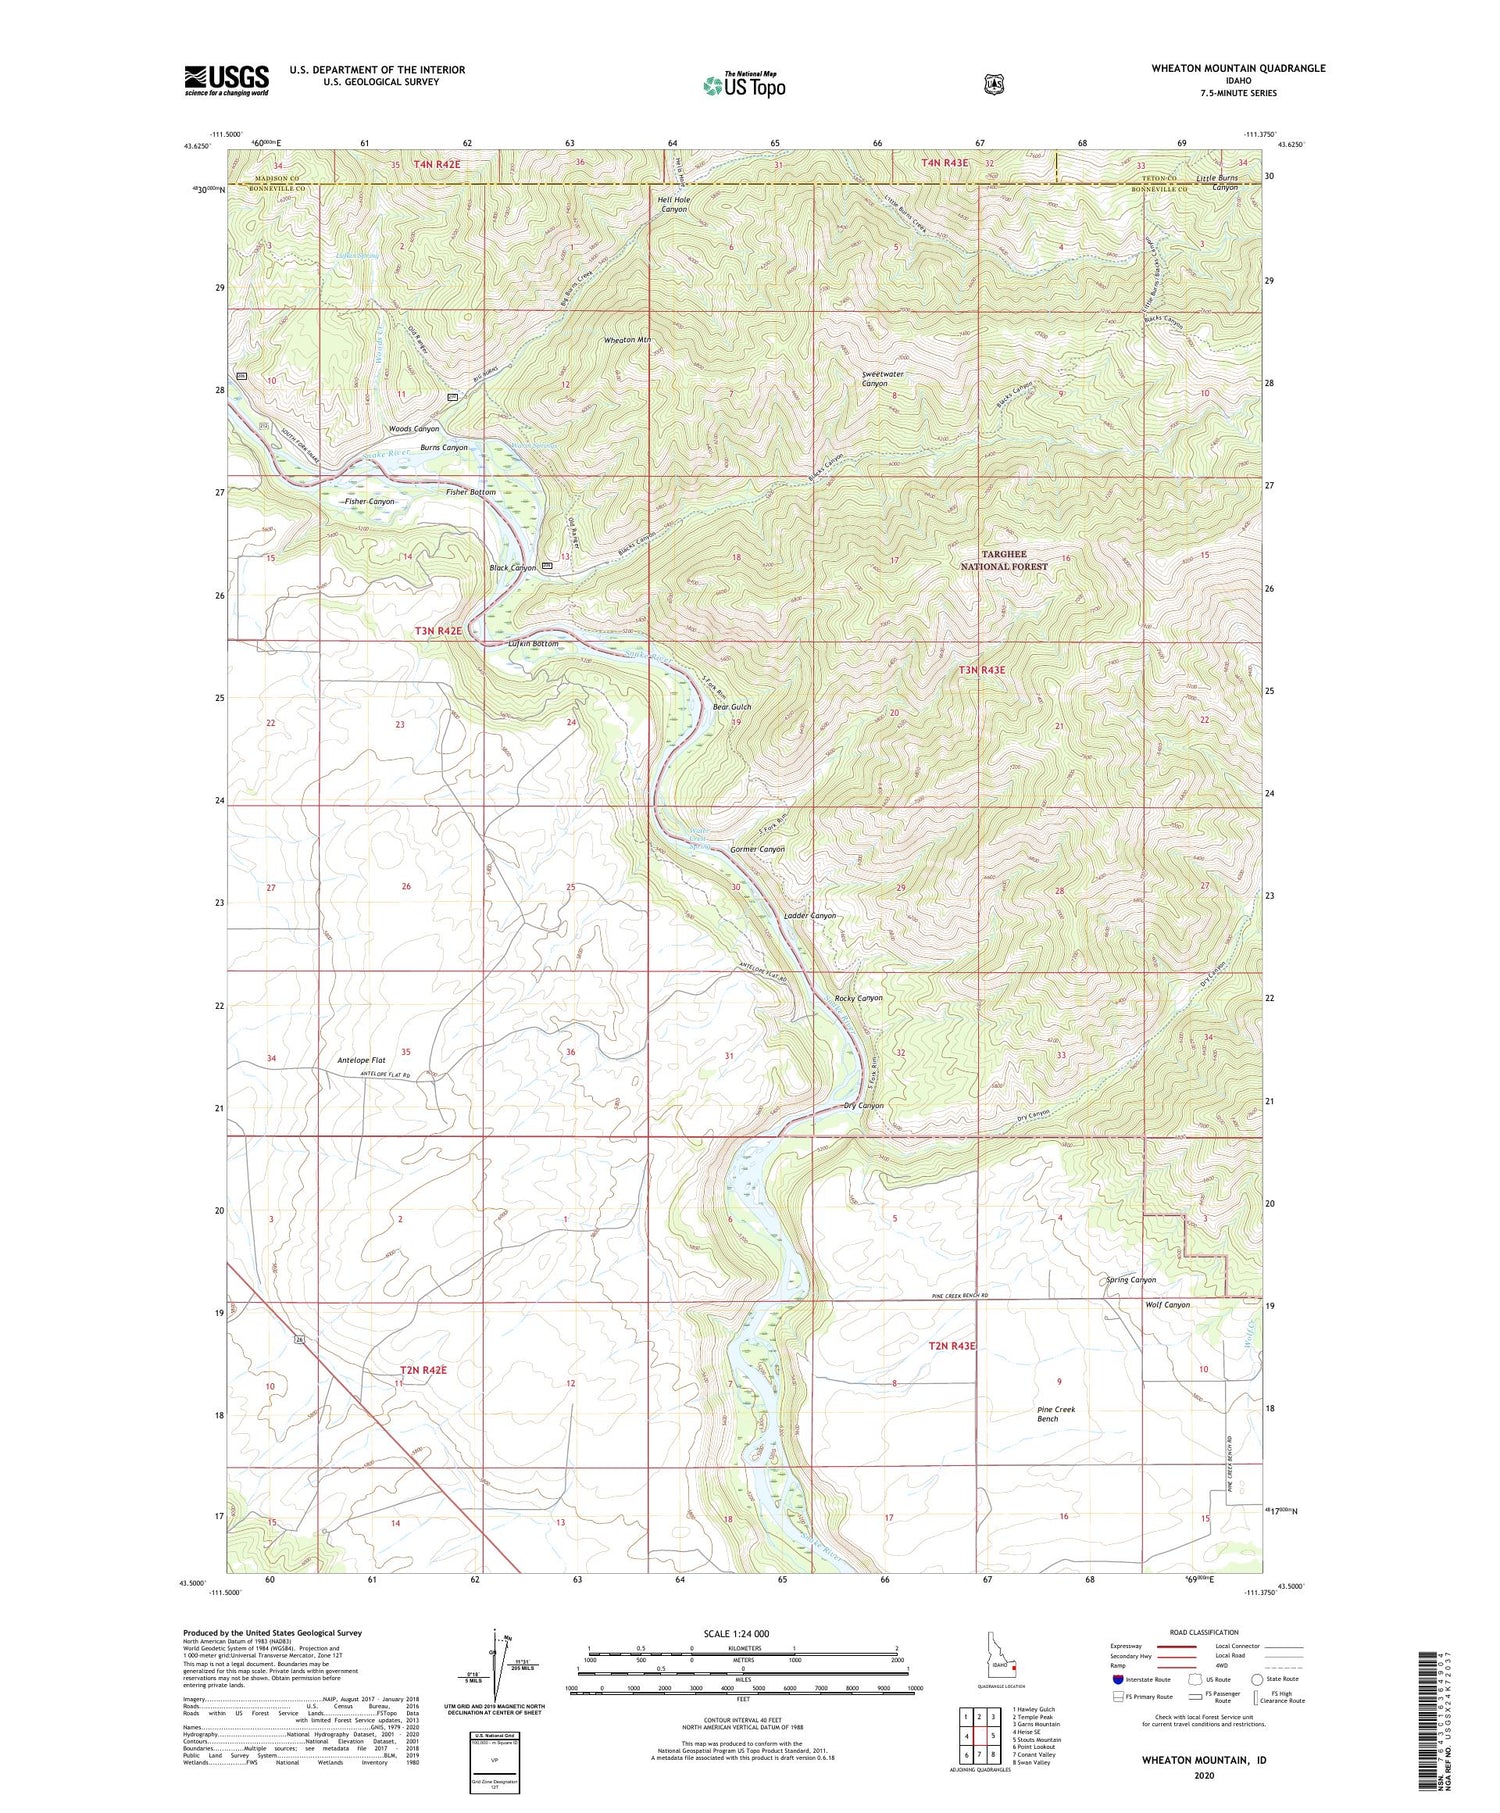 Wheaton Mountain Idaho US Topo Map Image